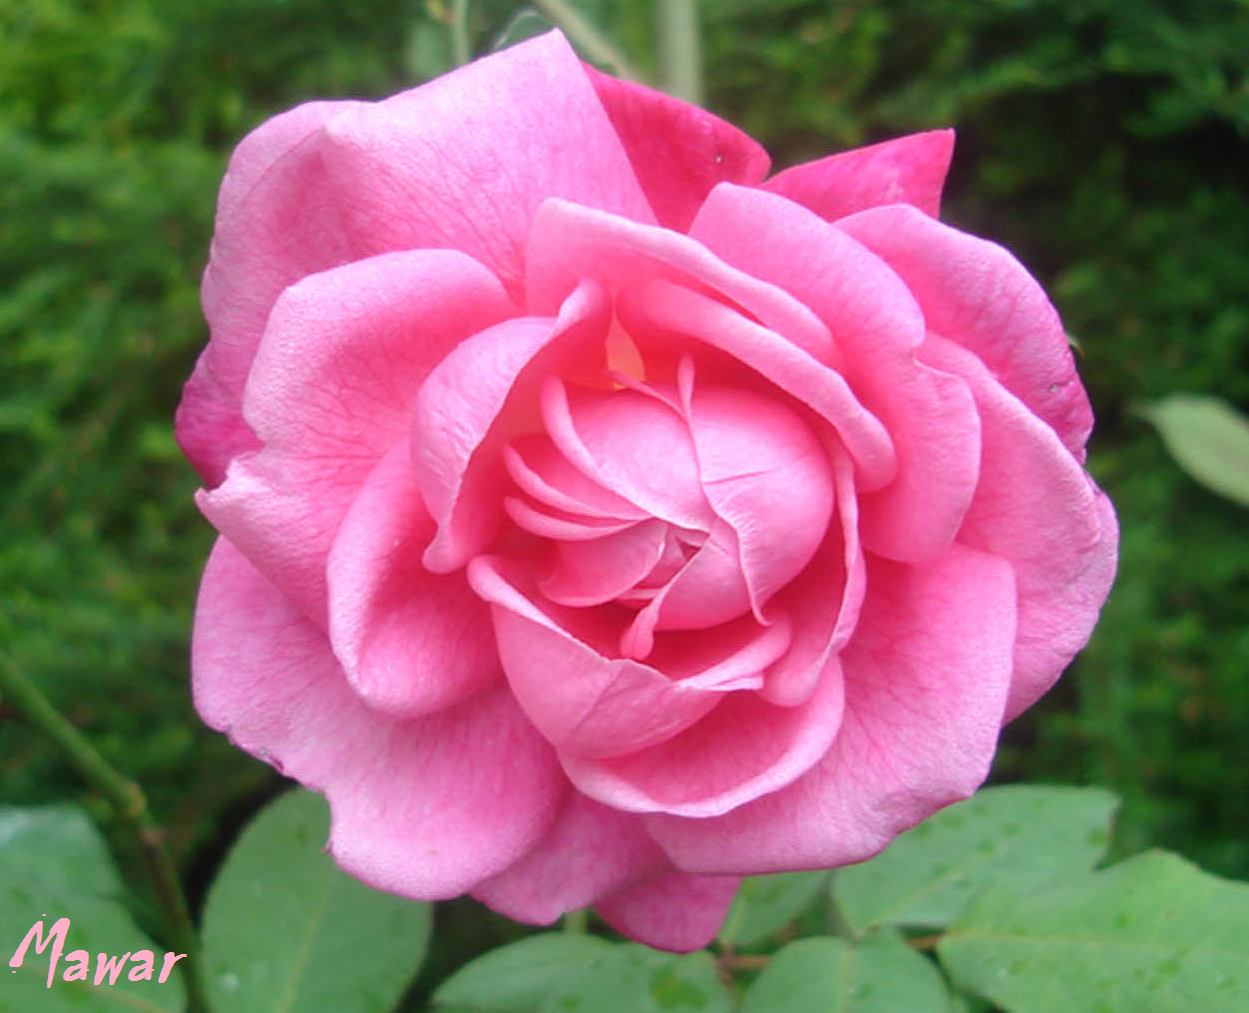  Bunga  Mawar  Merah Muda Pink Rose Photos Alam Mentari